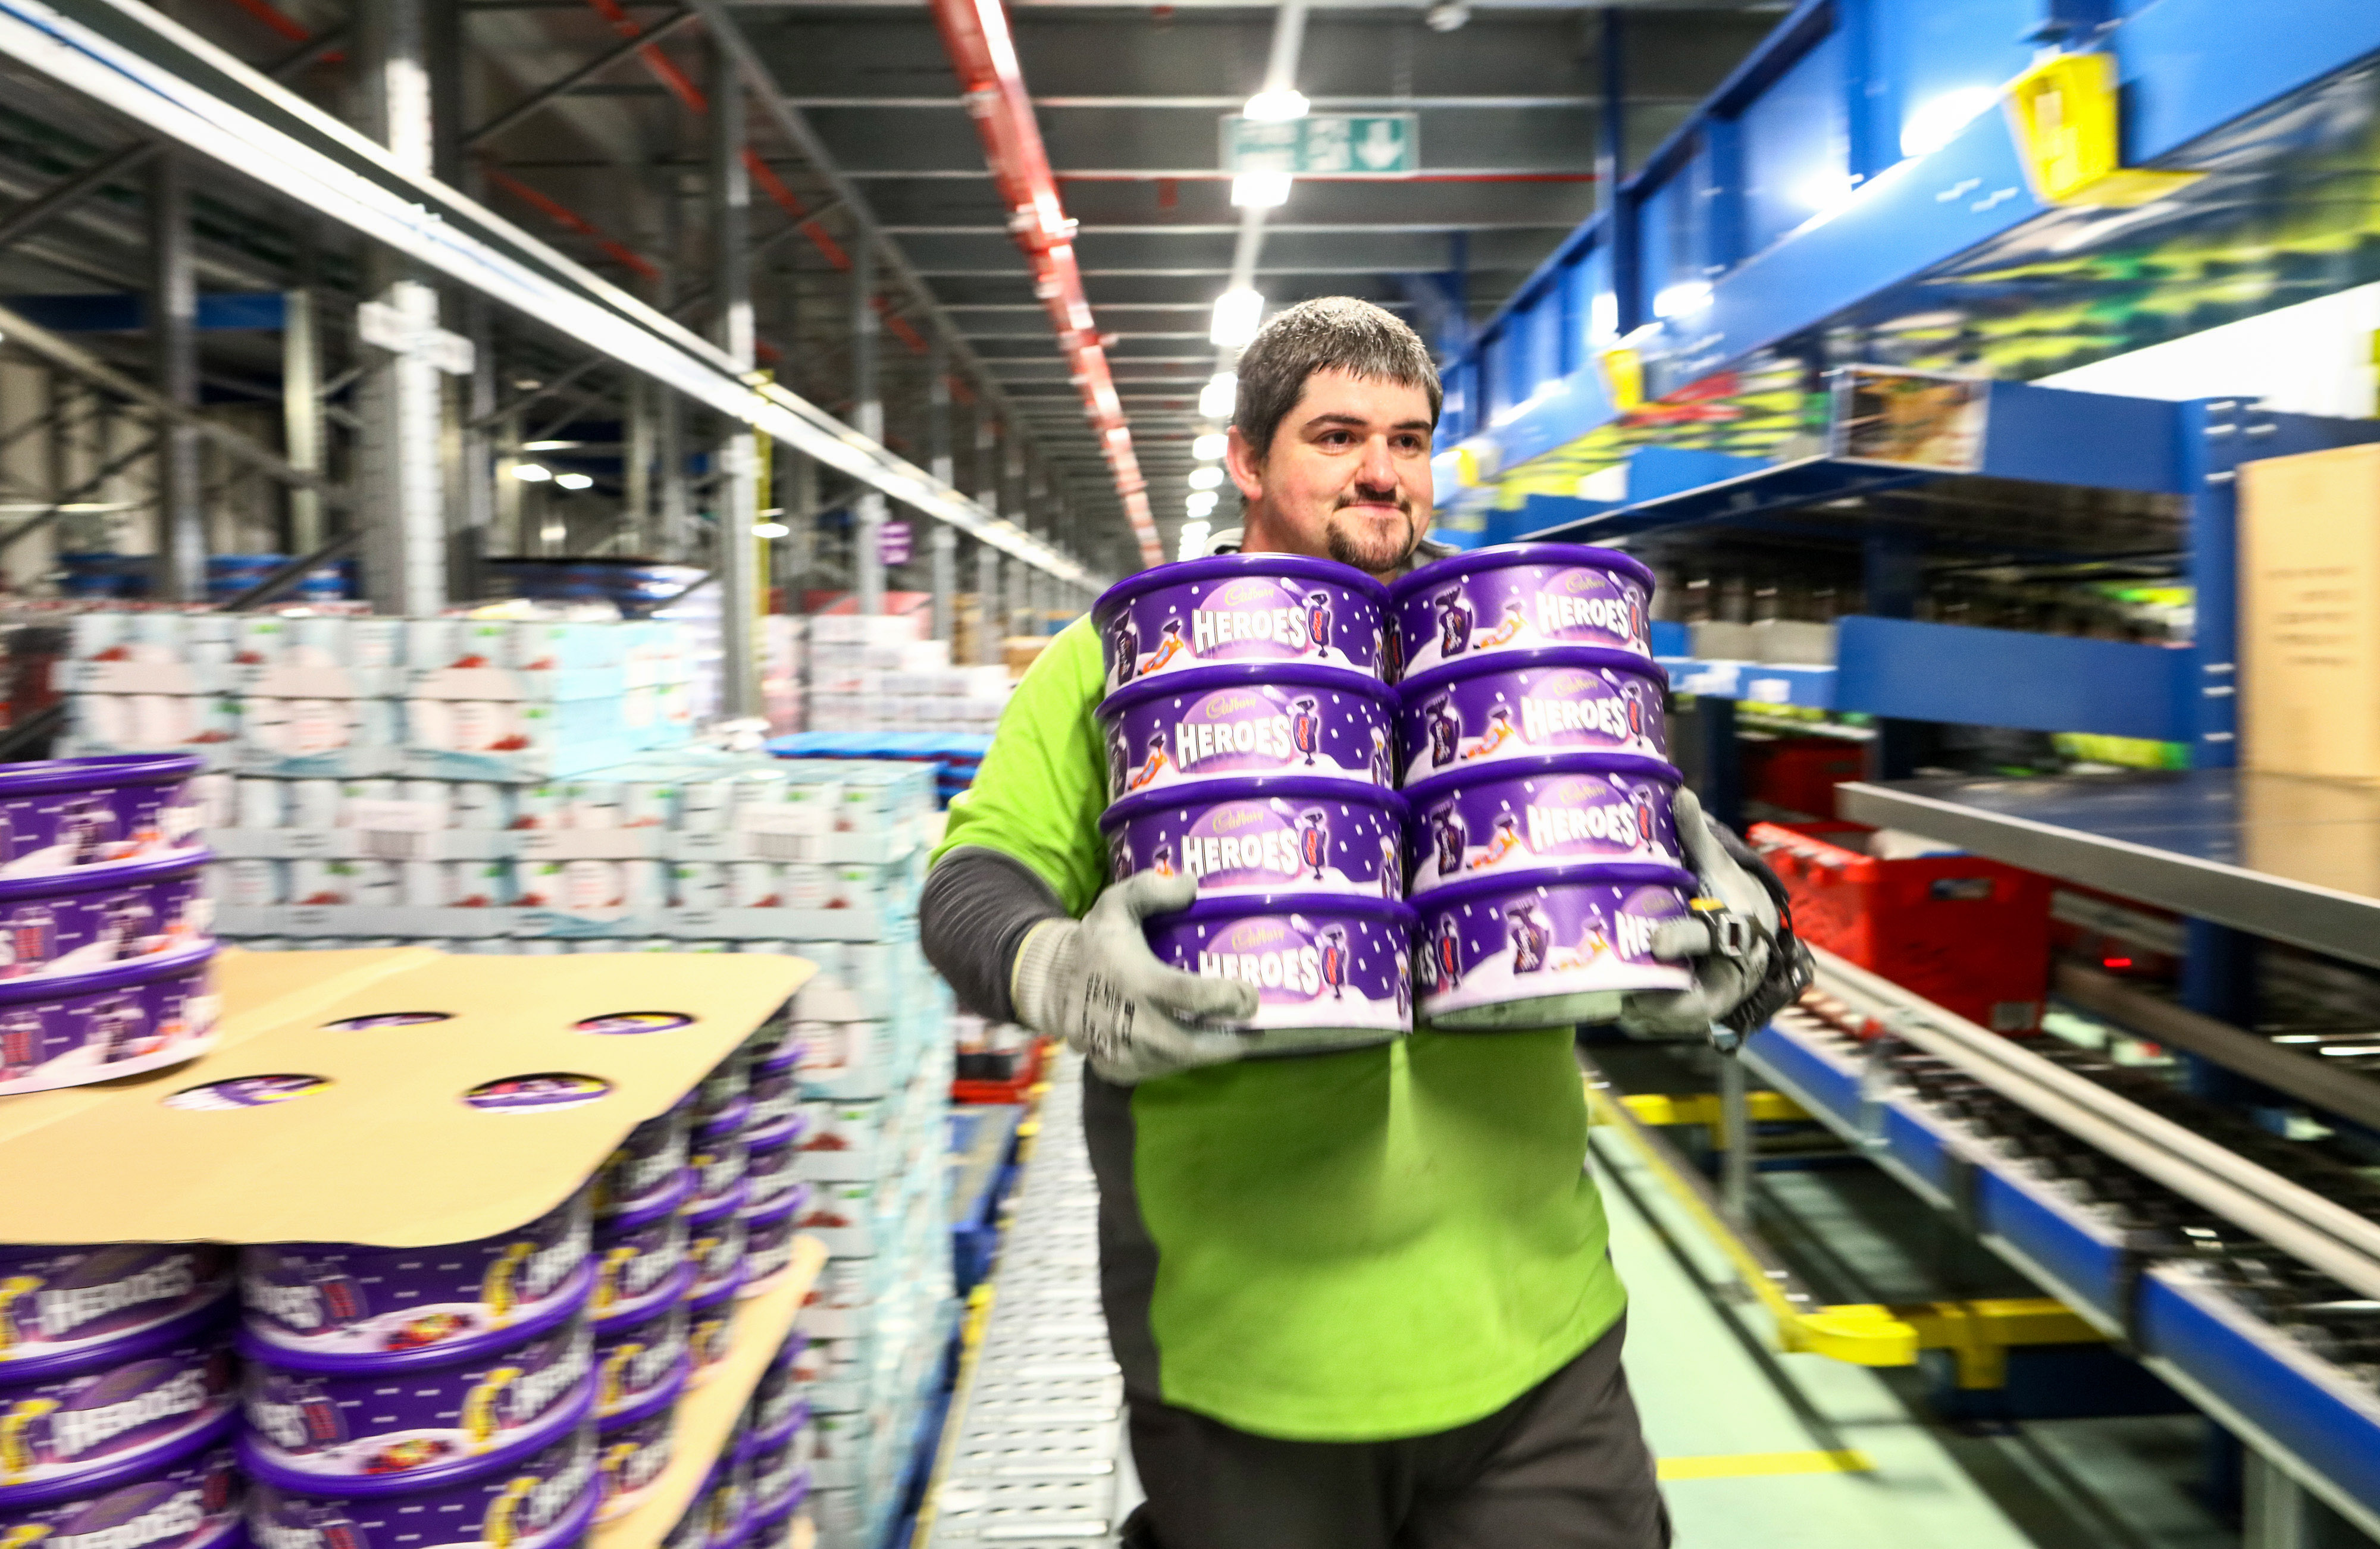 Derzeit werden 600-g-Cadbury-Hero-Becher bei Tesco und Morrisons für 5 £ verkauft